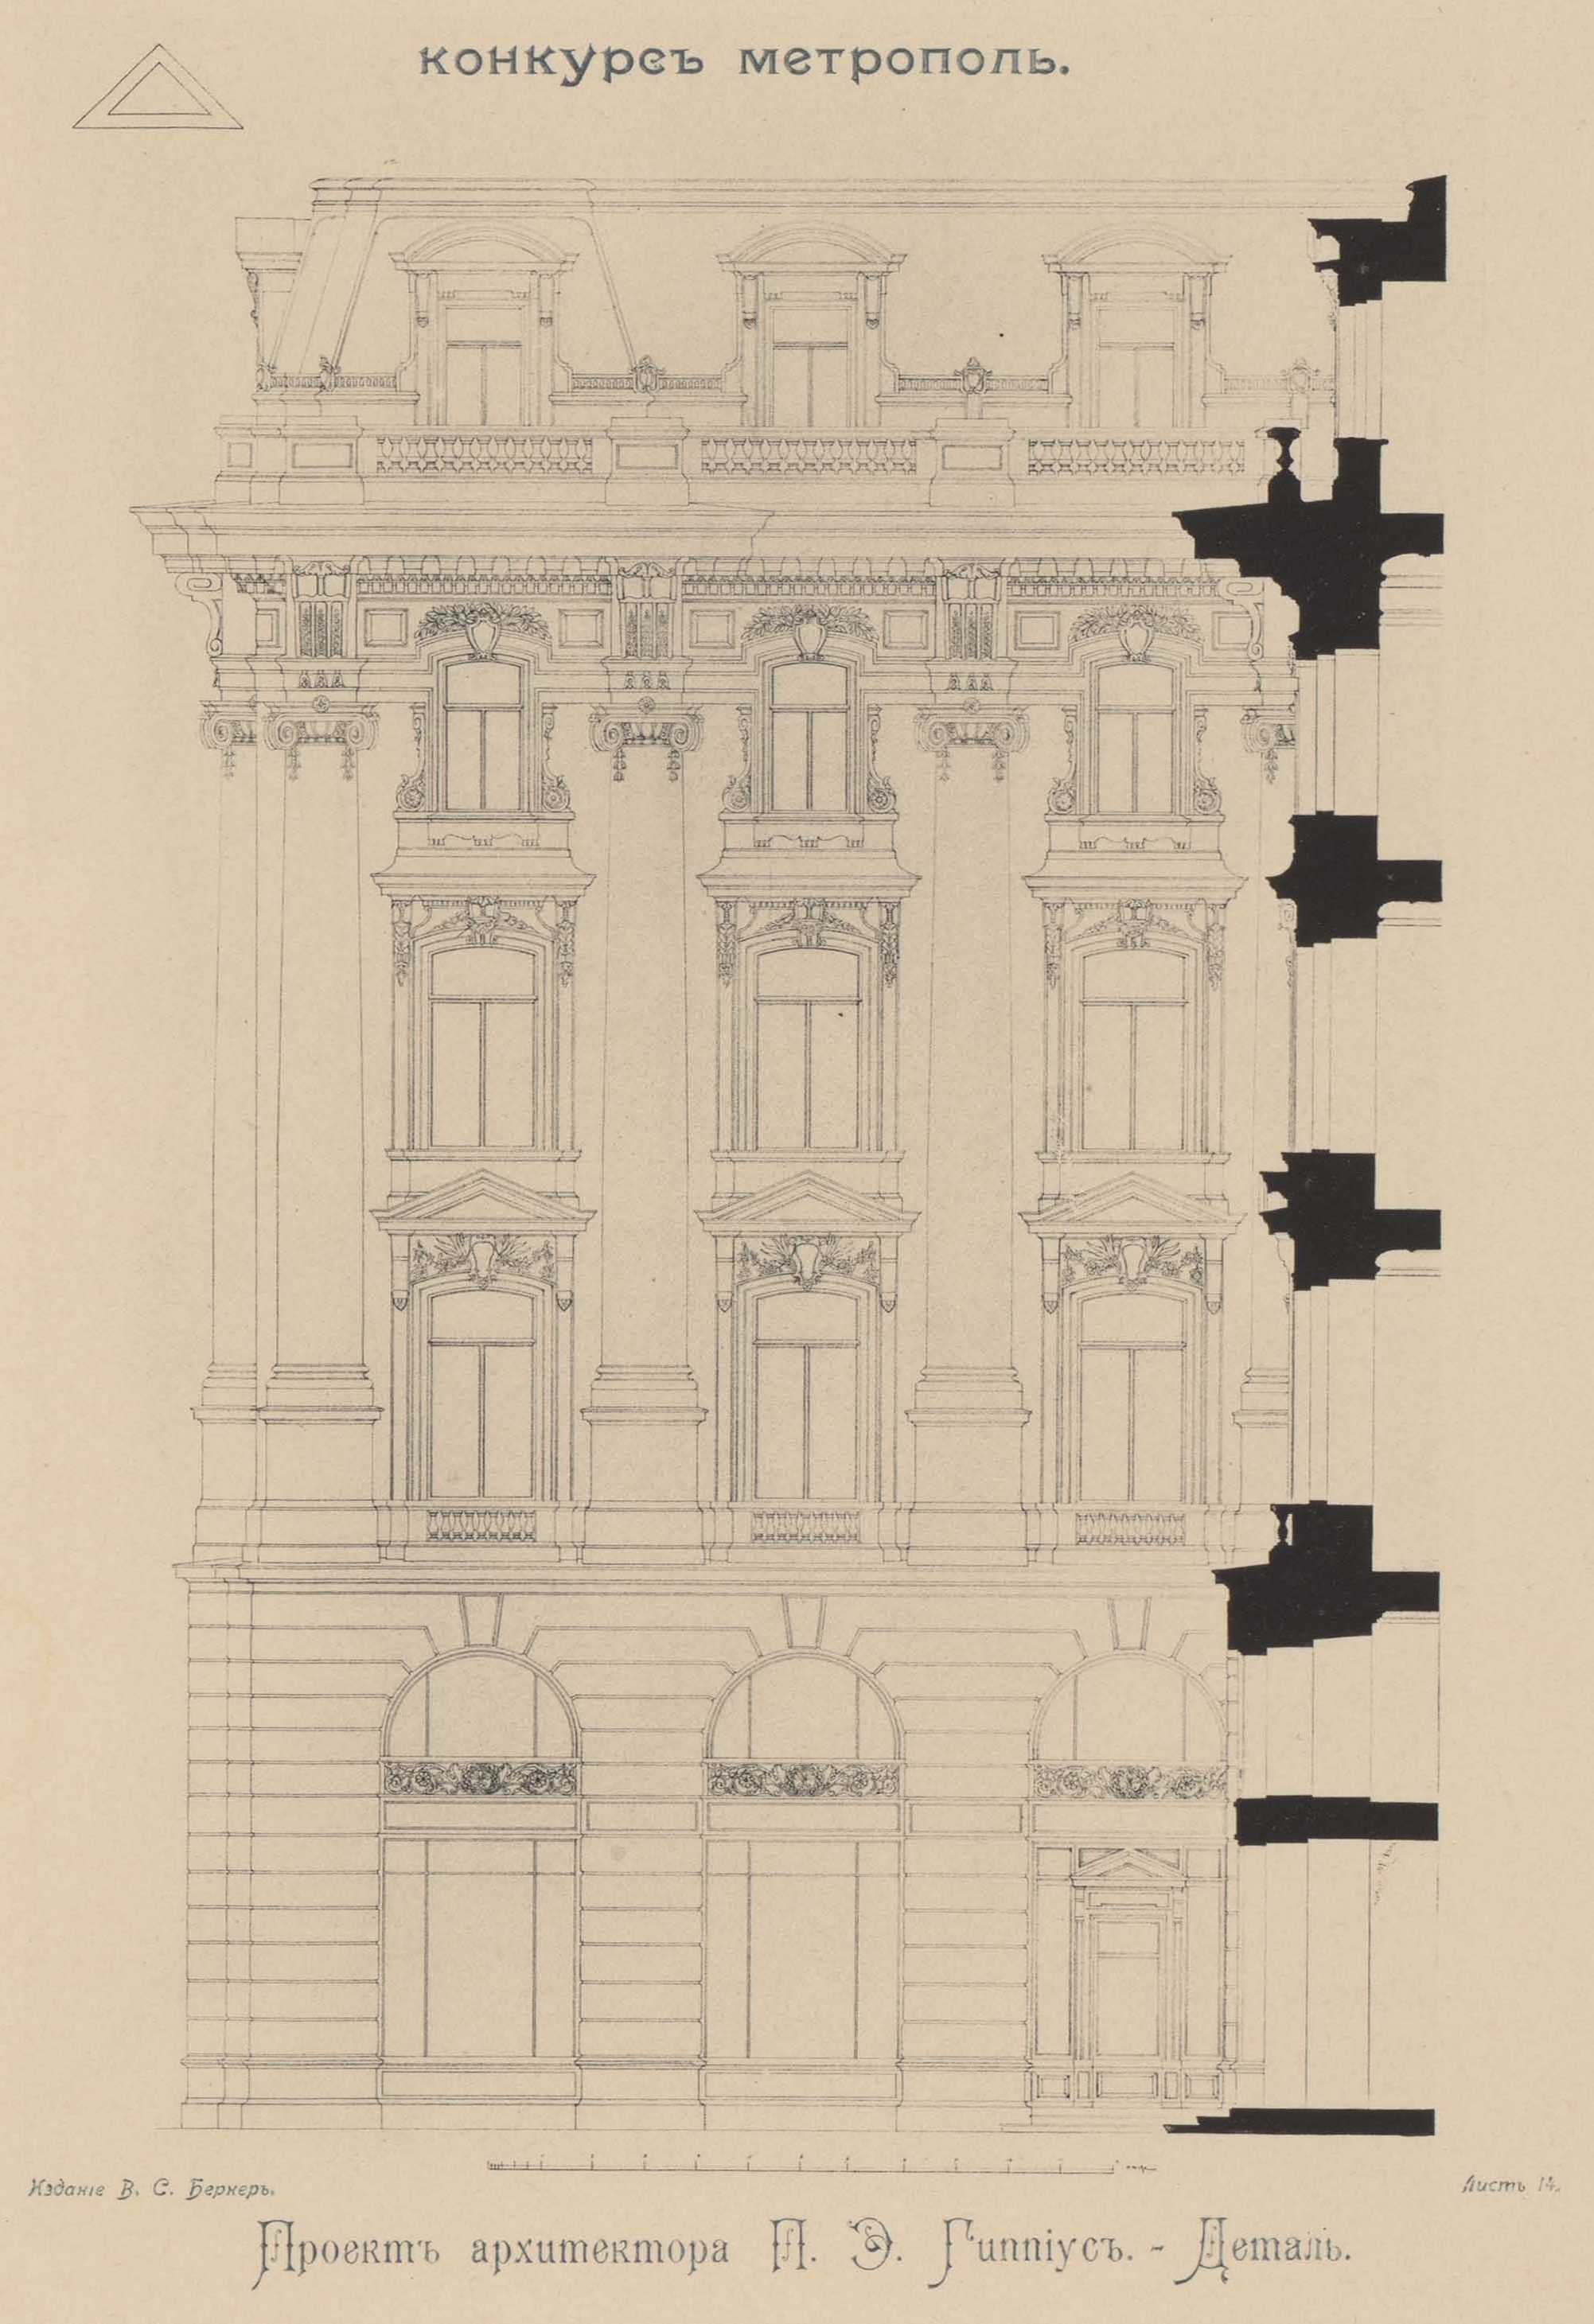 Конкурс на фасад гостиницы «Метрополь» (1899). Проект рекомендованный жюри для приобретения. Проект архитектора П. Э. Гиппиус. Деталь